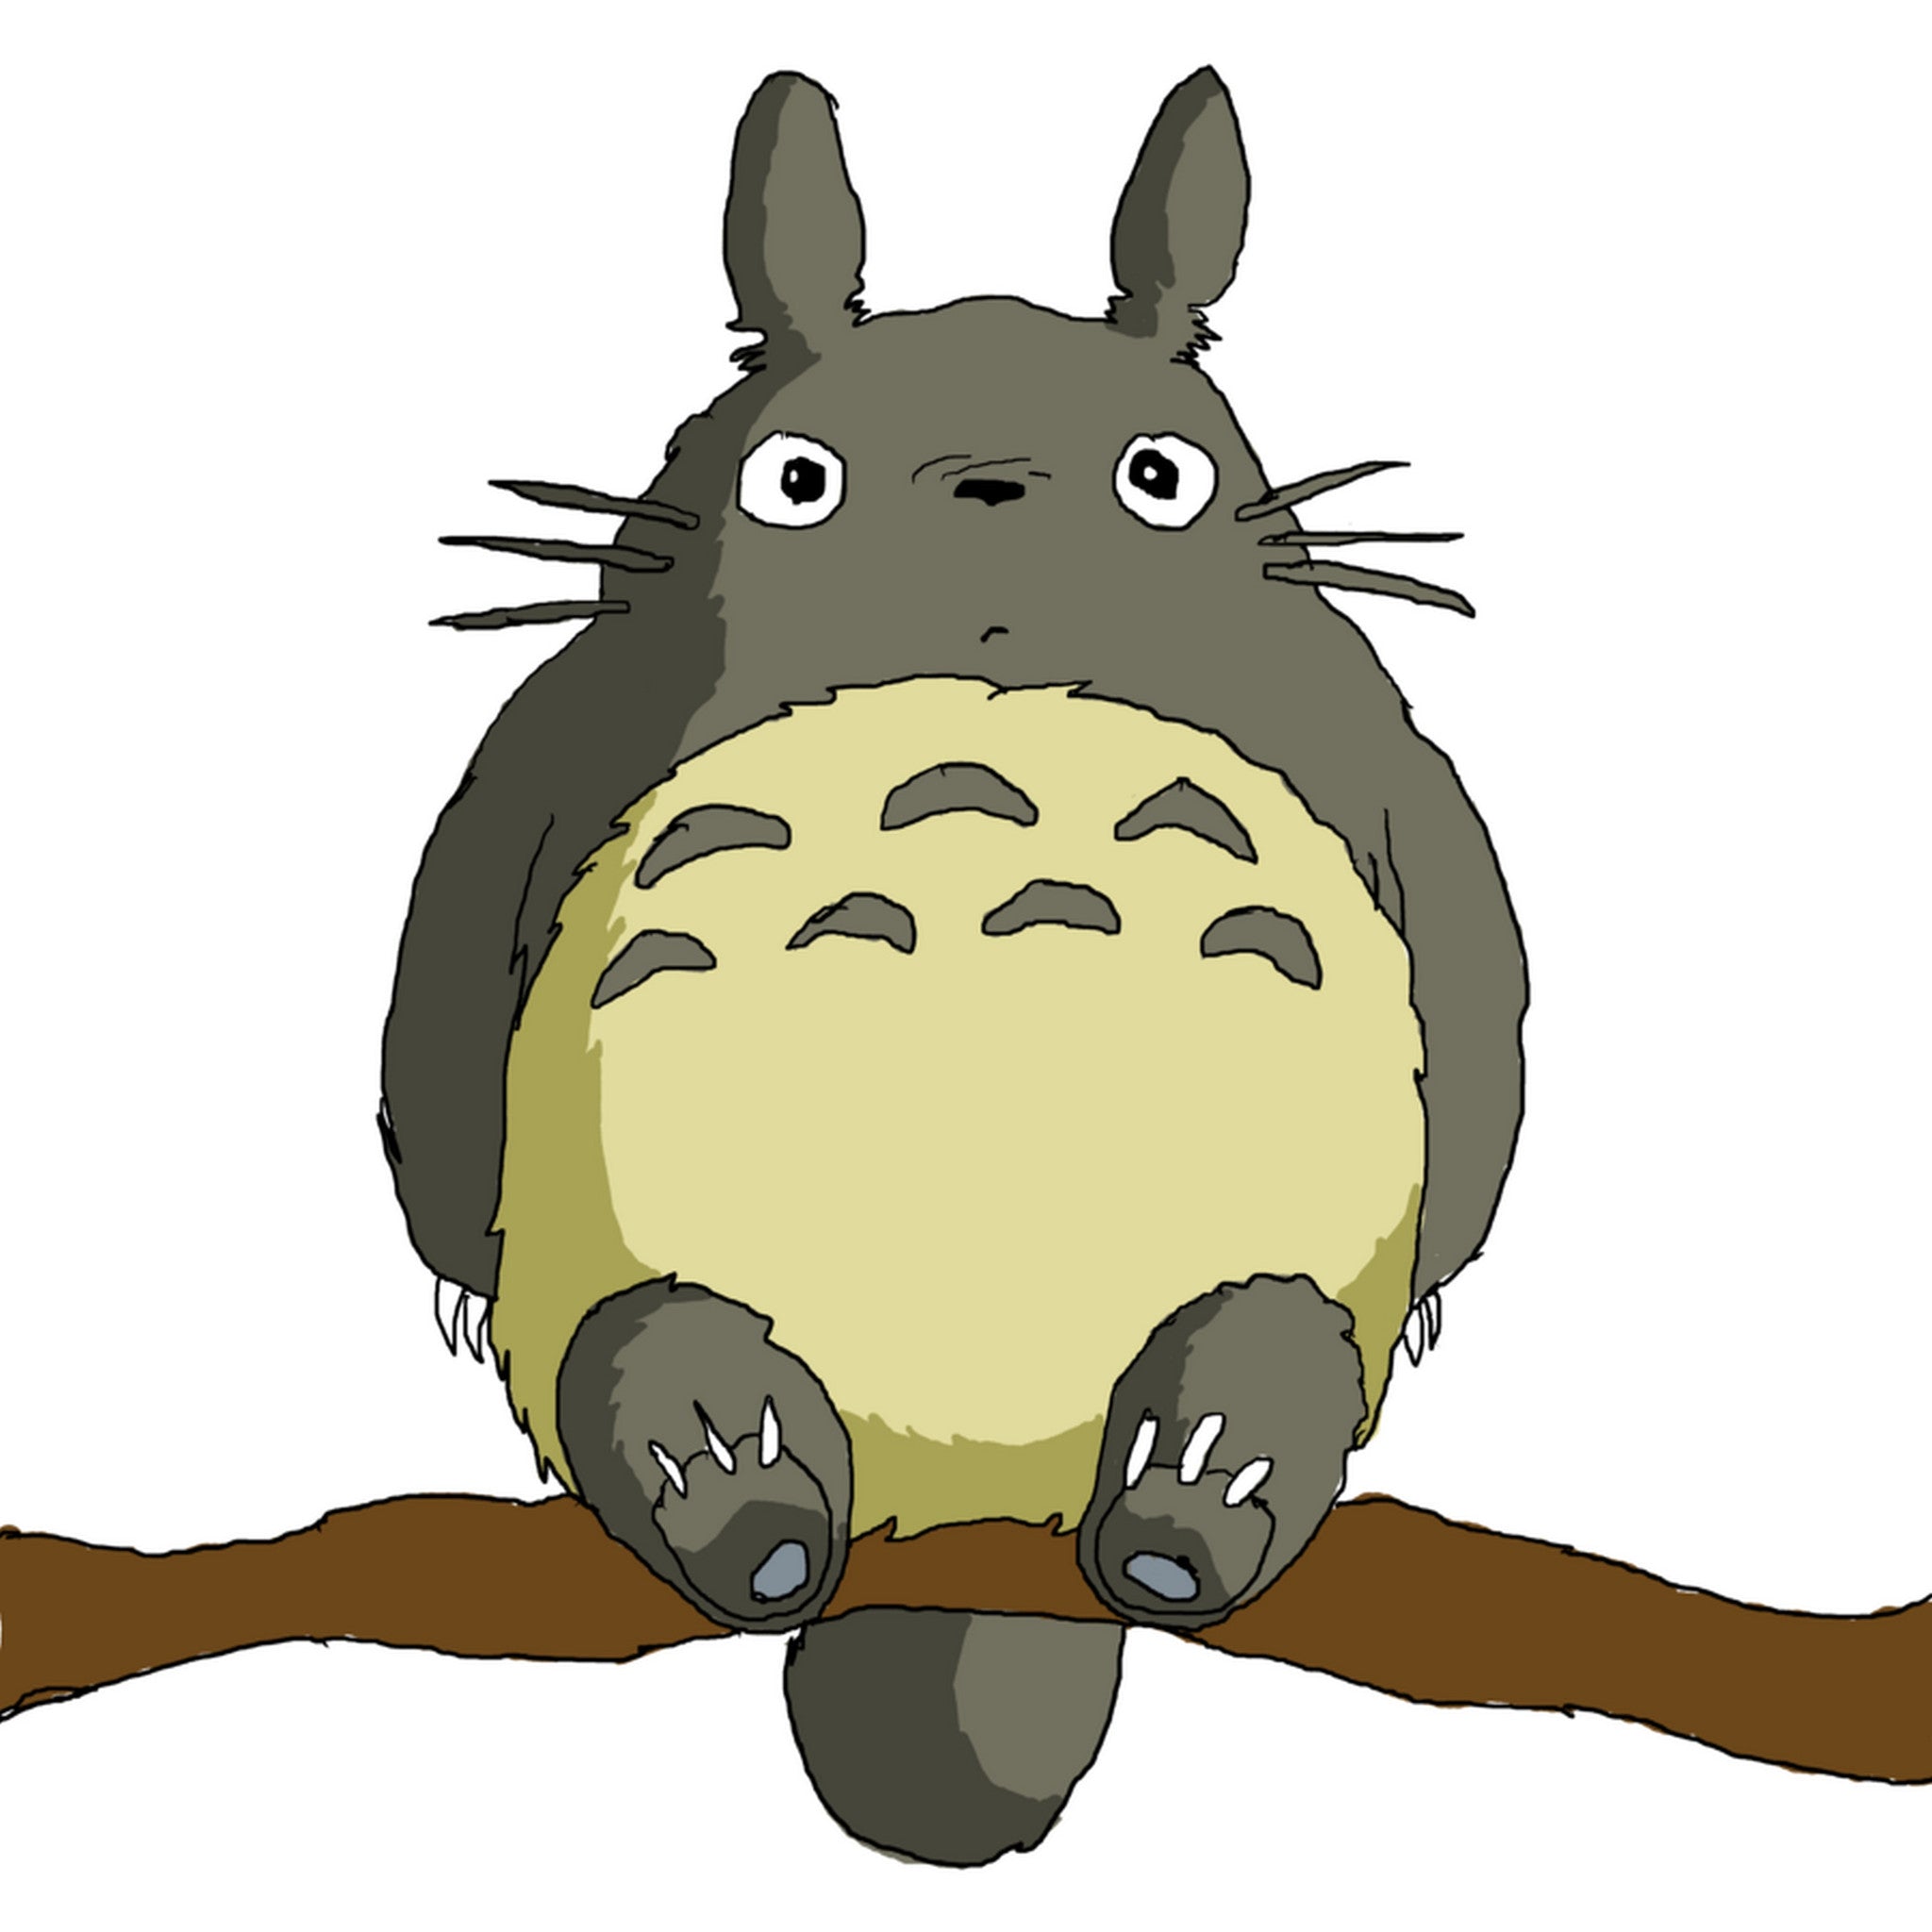 Totoro sur son arbre